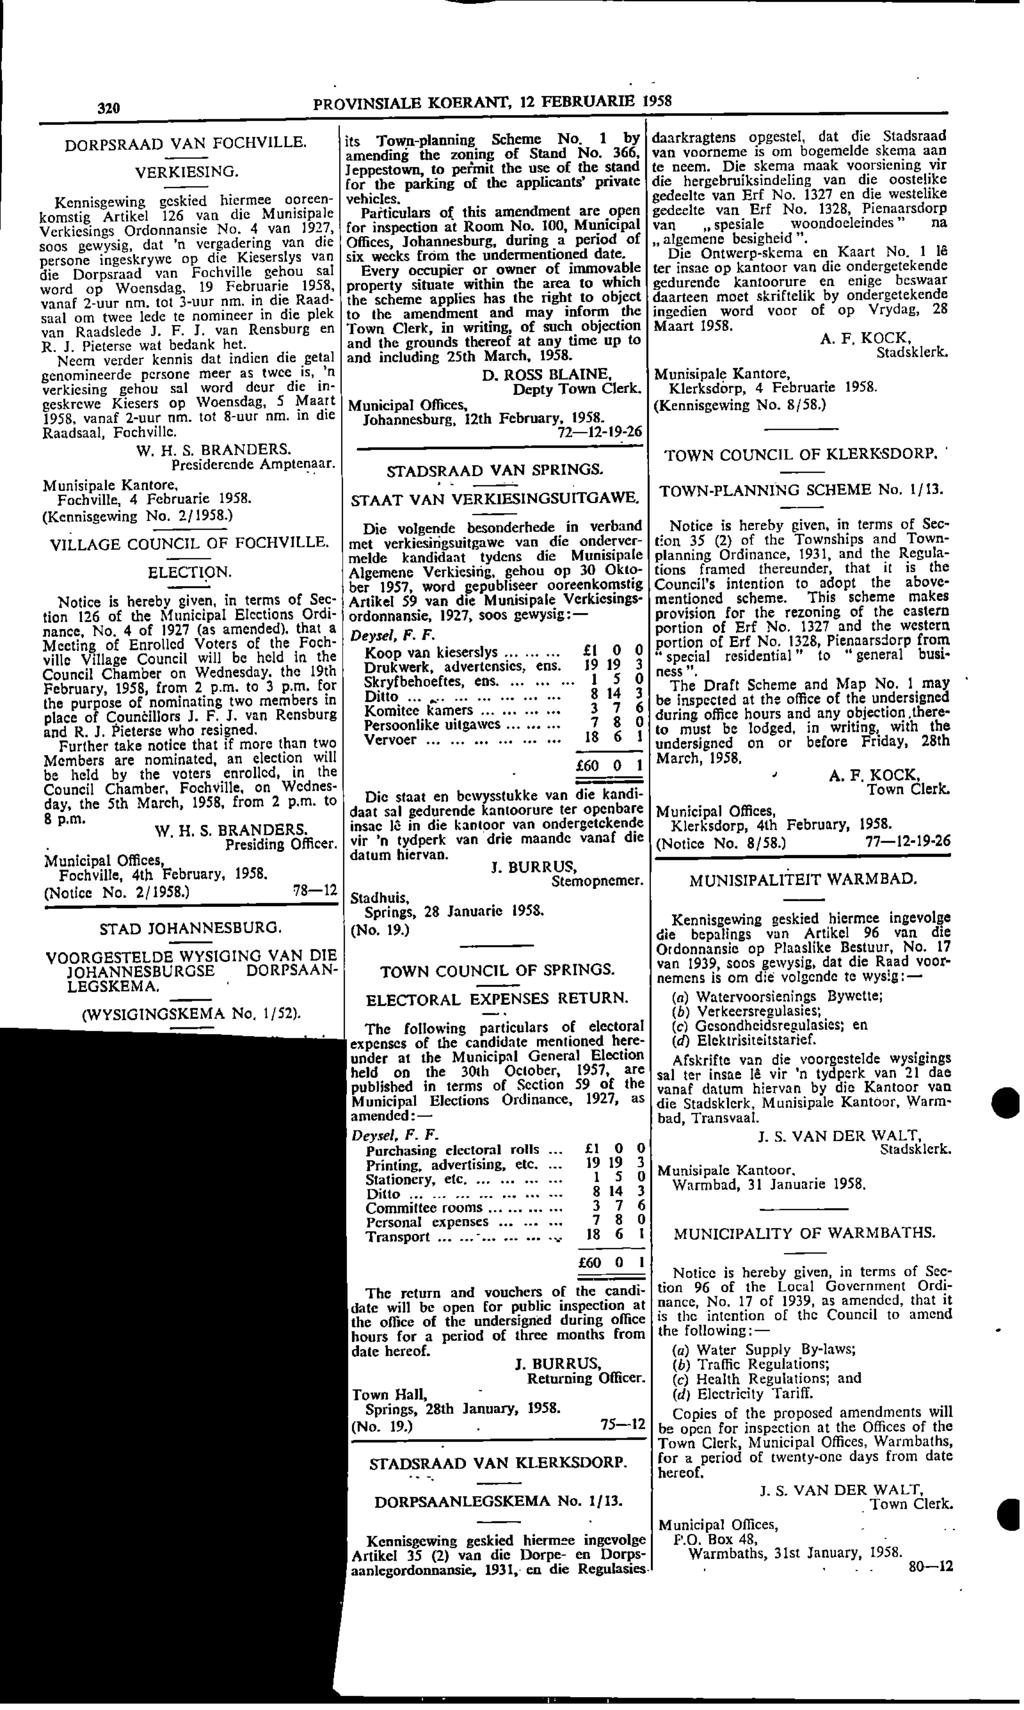 320 PROVINSIALE KOERANT, 12 FEBRUARIE 1958 DORPSRAAD VAN FOCHVILLE its Townplanning Scheme No 1 by daarkragtens opgestel, dat die Stadsraad amending the zoning of Stand No 366, van voorneme is om